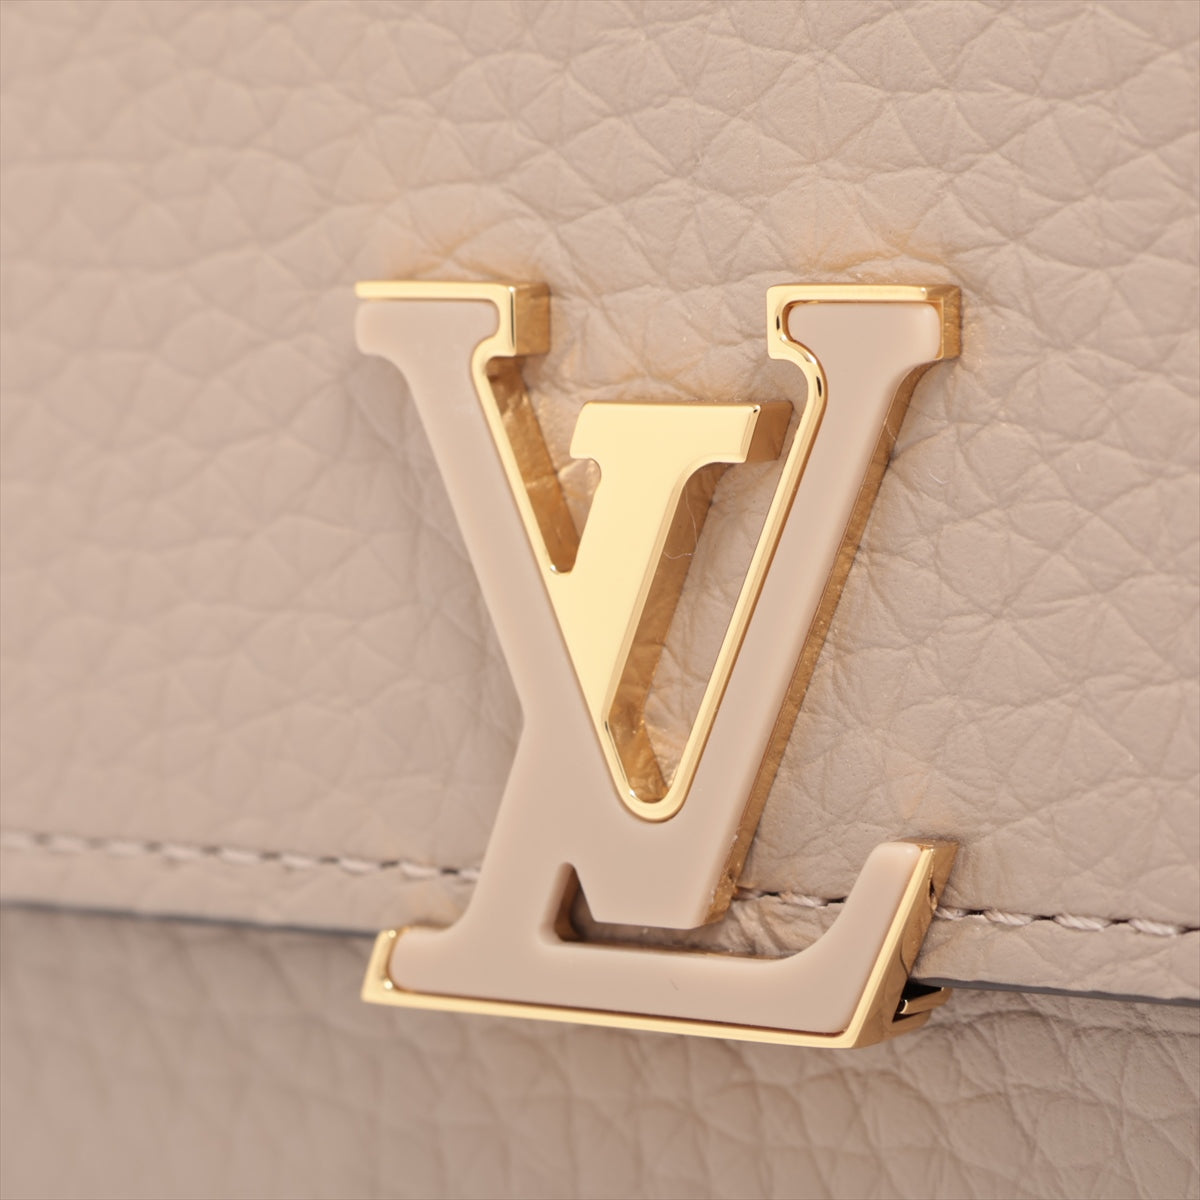 Louis Vuitton  Portefolio Capsule Compact M62159 Gale Compact Wallet